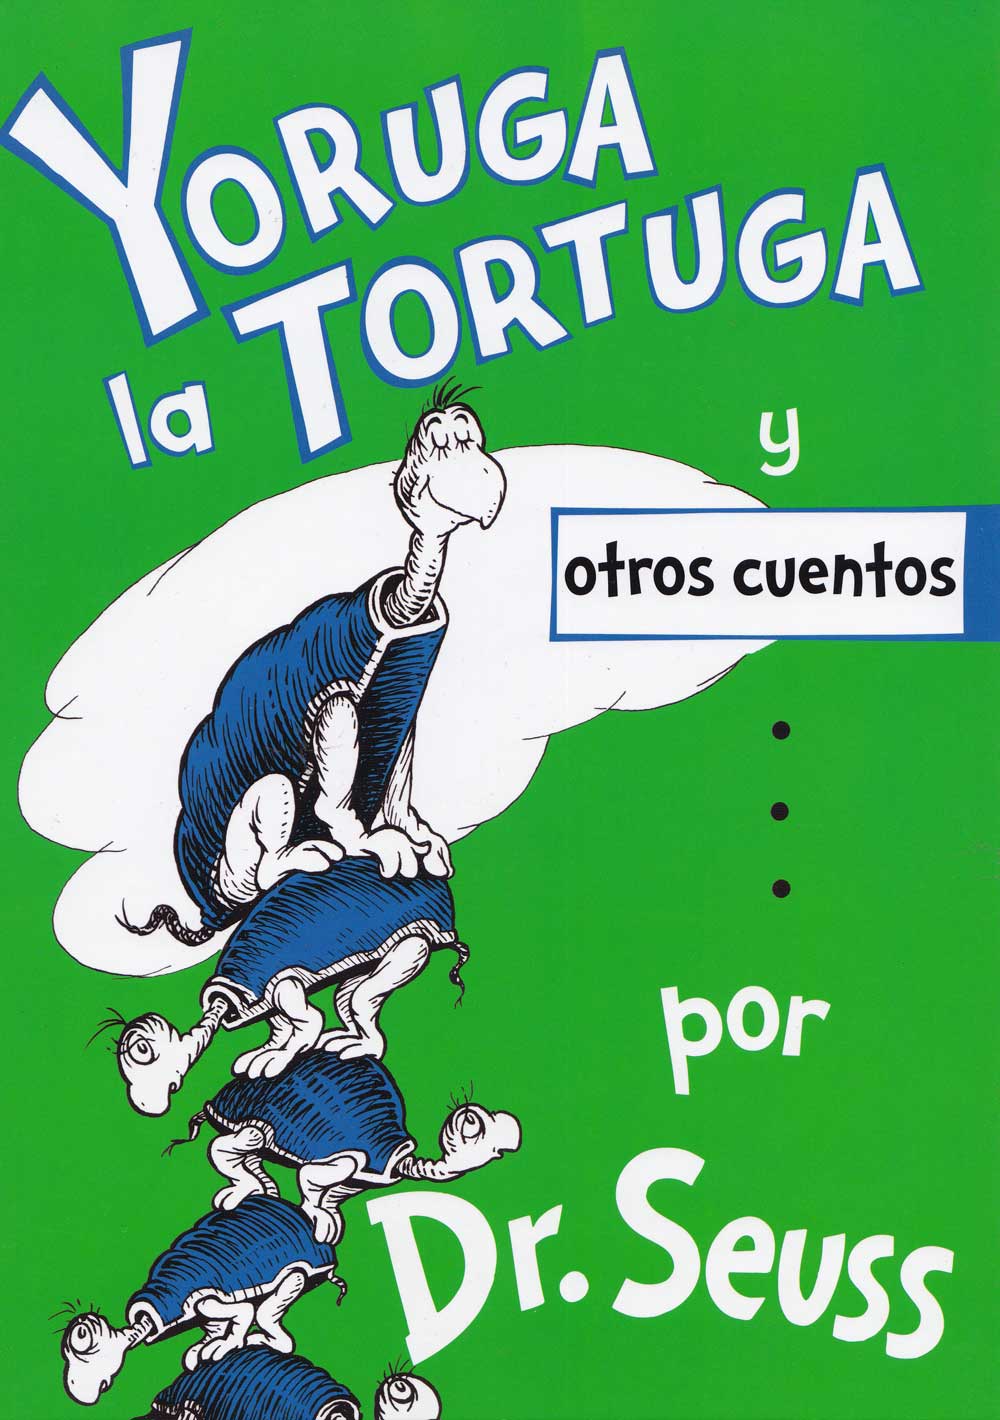 Yoruga la Tortuga y otros cuentos, Yertle the Turtle, Del Sol Books